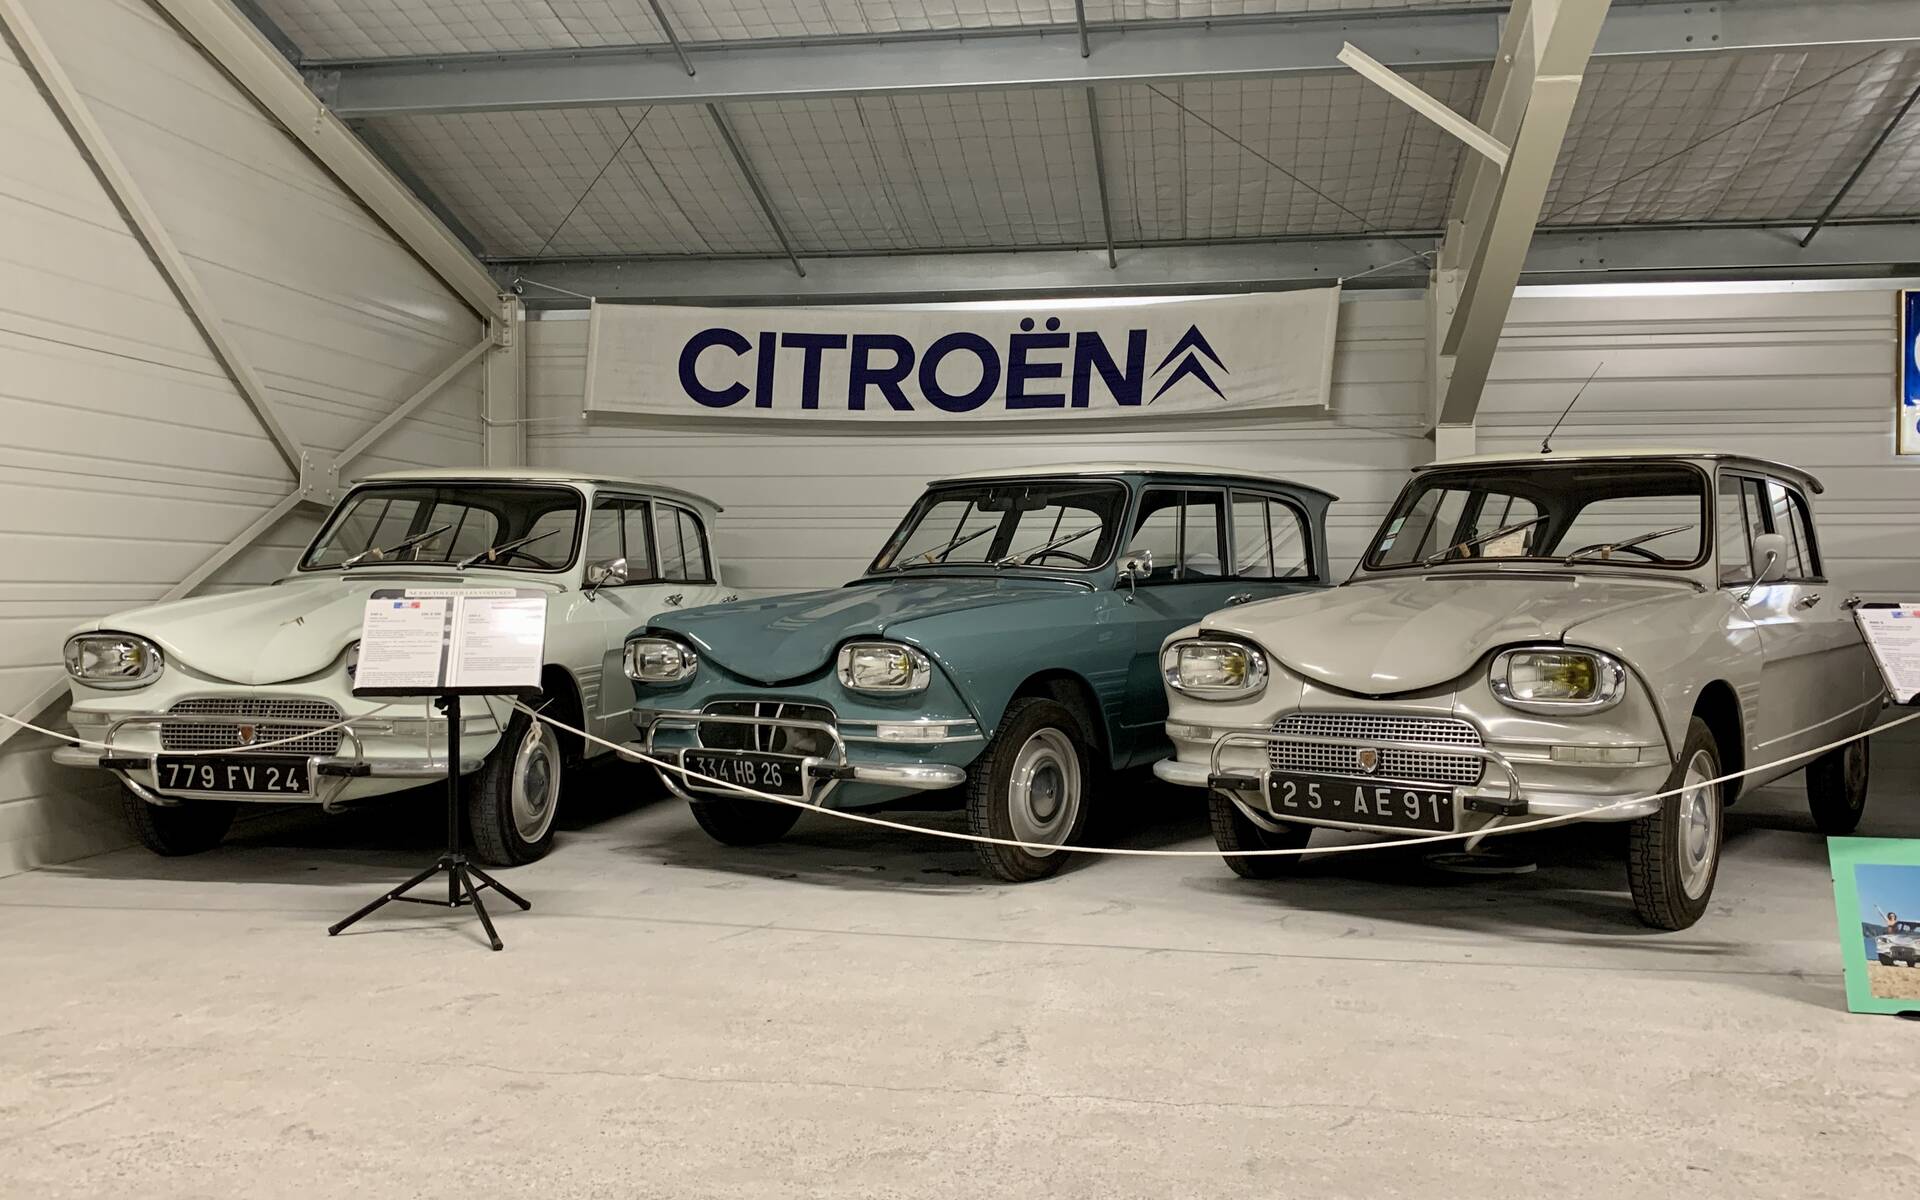 32 - Photos: plus de 100 Citroën d'exception réunies dans un musée en France 543136-photos-plus-de-100-citroen-d-exception-reunies-dans-un-musee-en-france